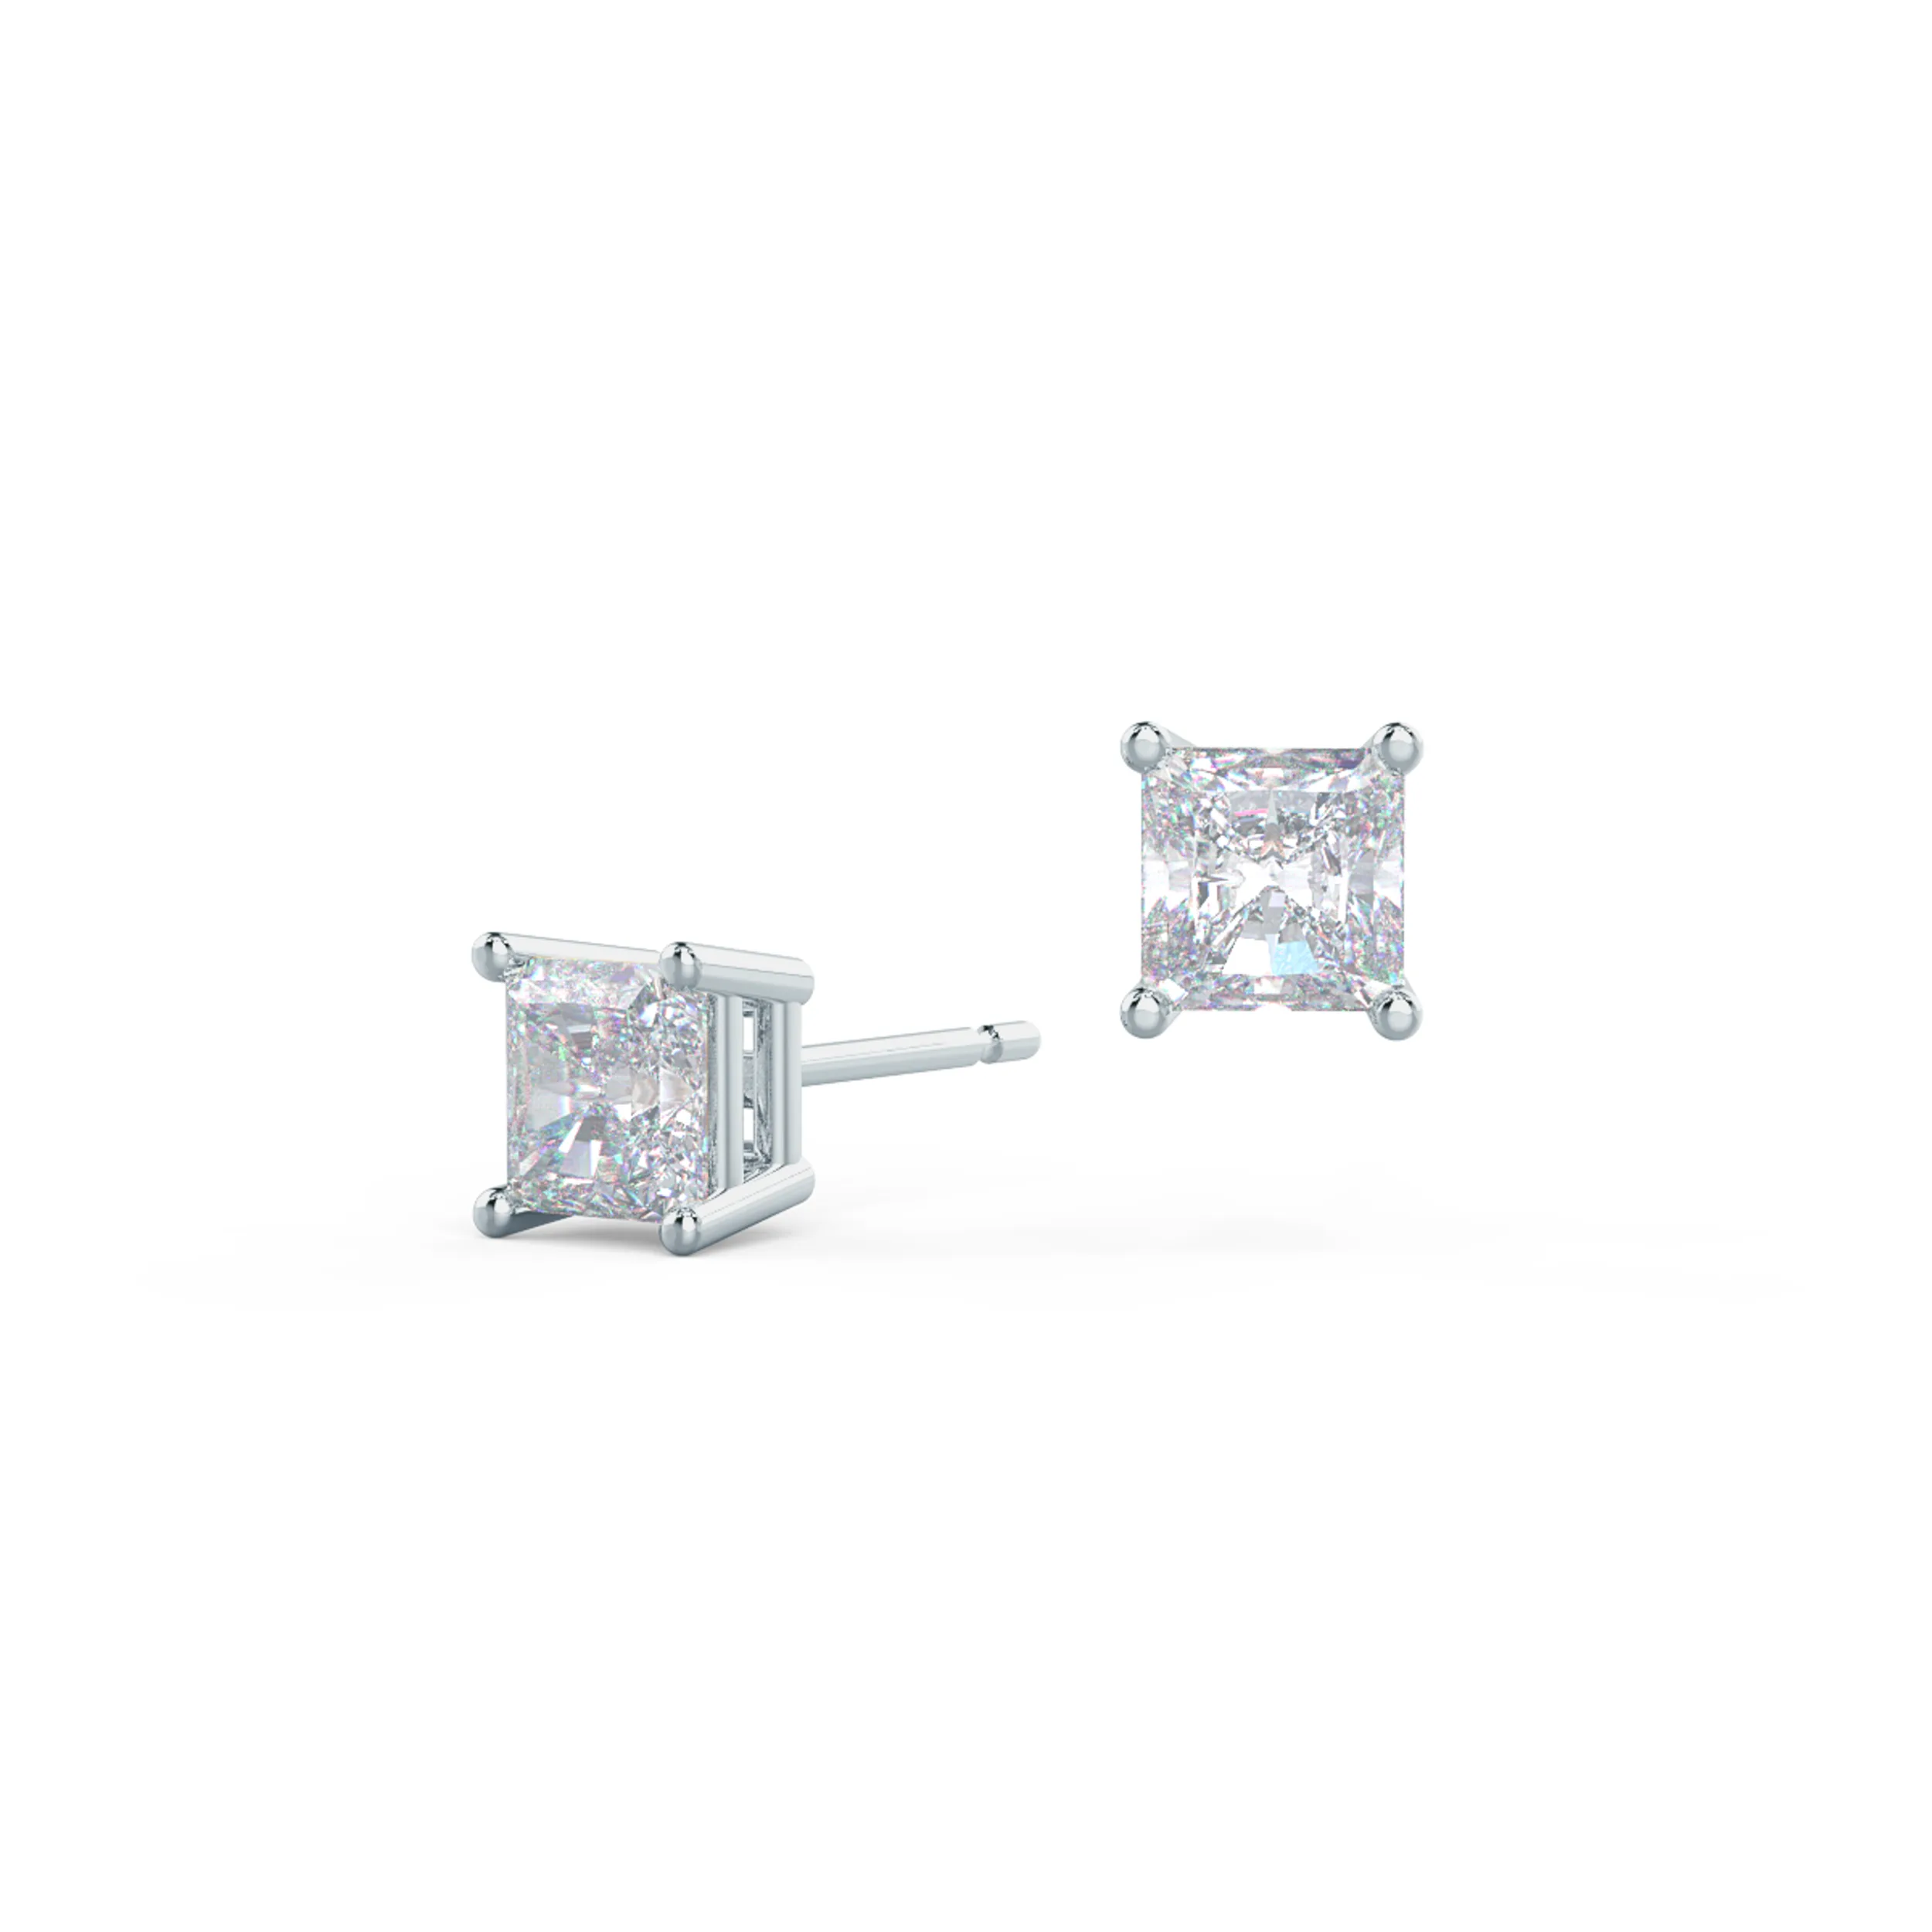 1.0 carat Radiant Diamond Stud Earrings in Platinum